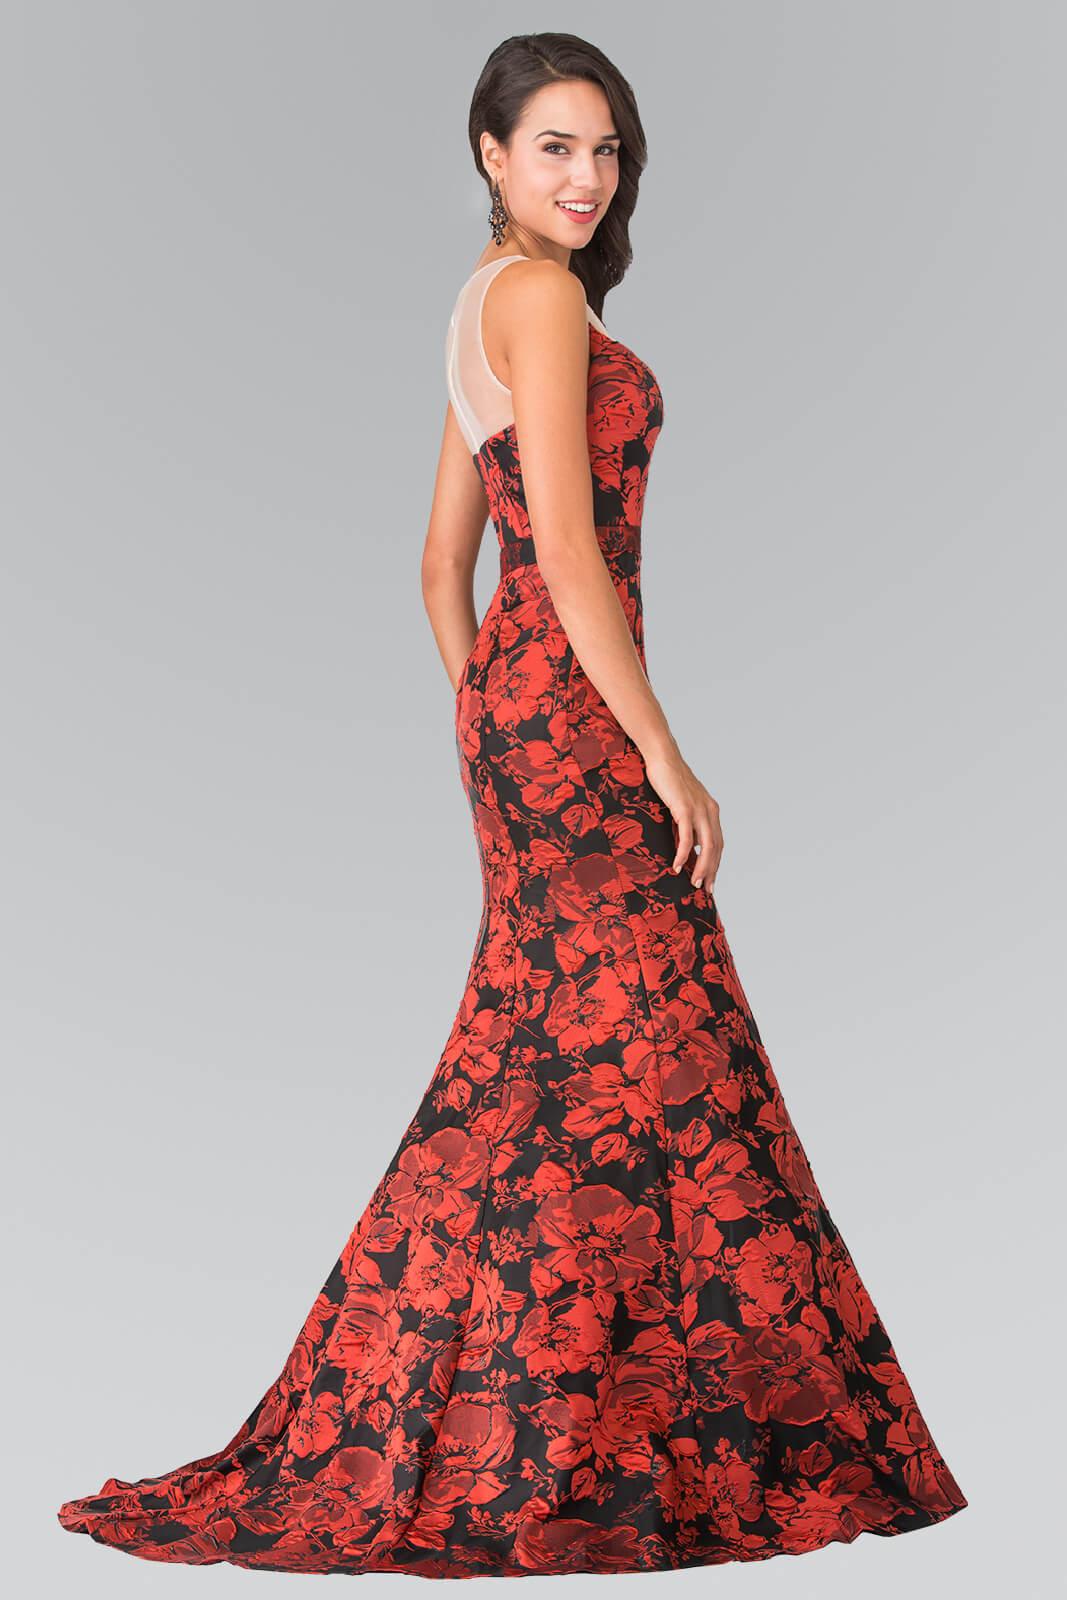 Prom Long Formal Dress Floral Print Evening Gown - The Dress Outlet Elizabeth K